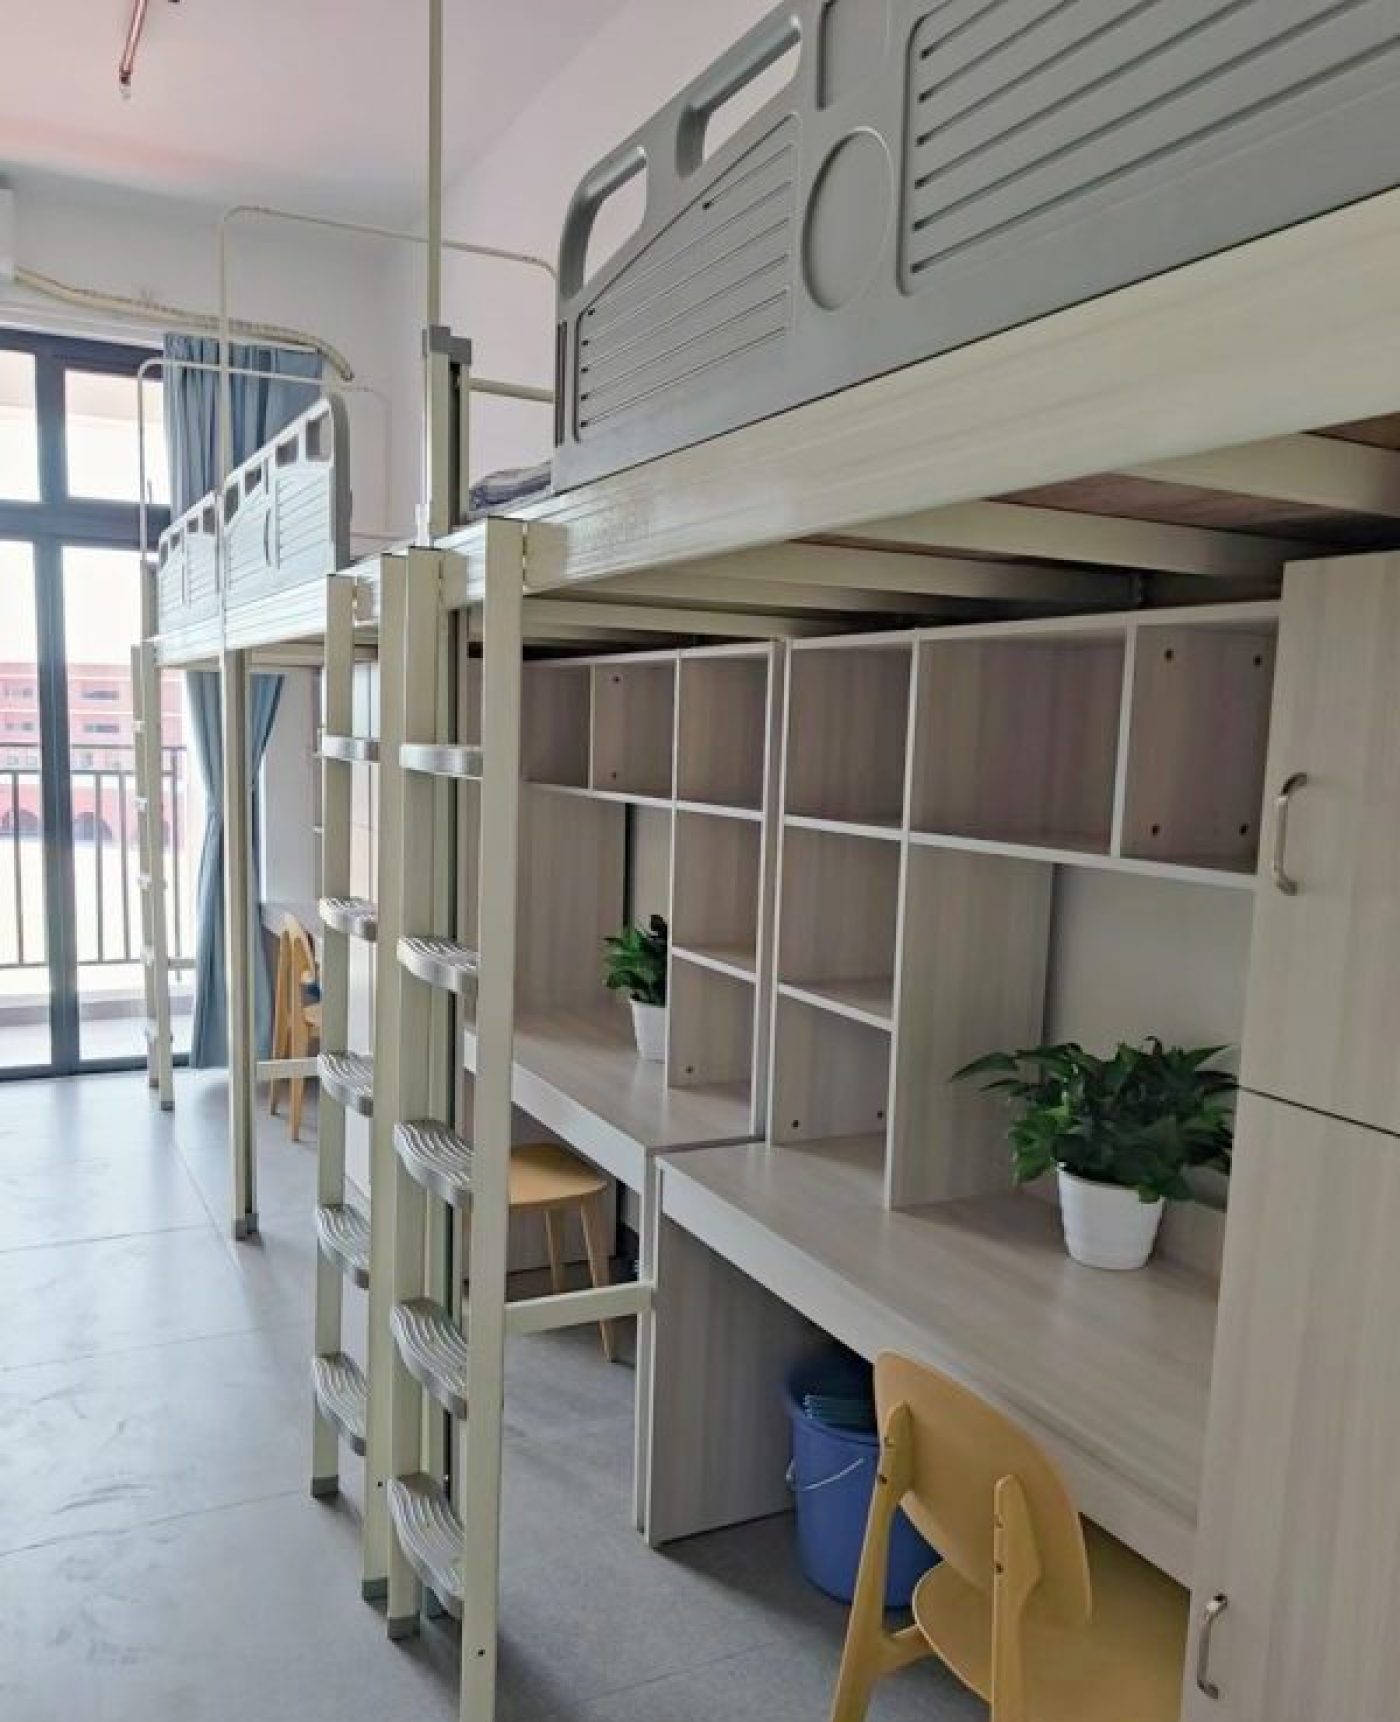 深圳高校钢木组合公寓床案例